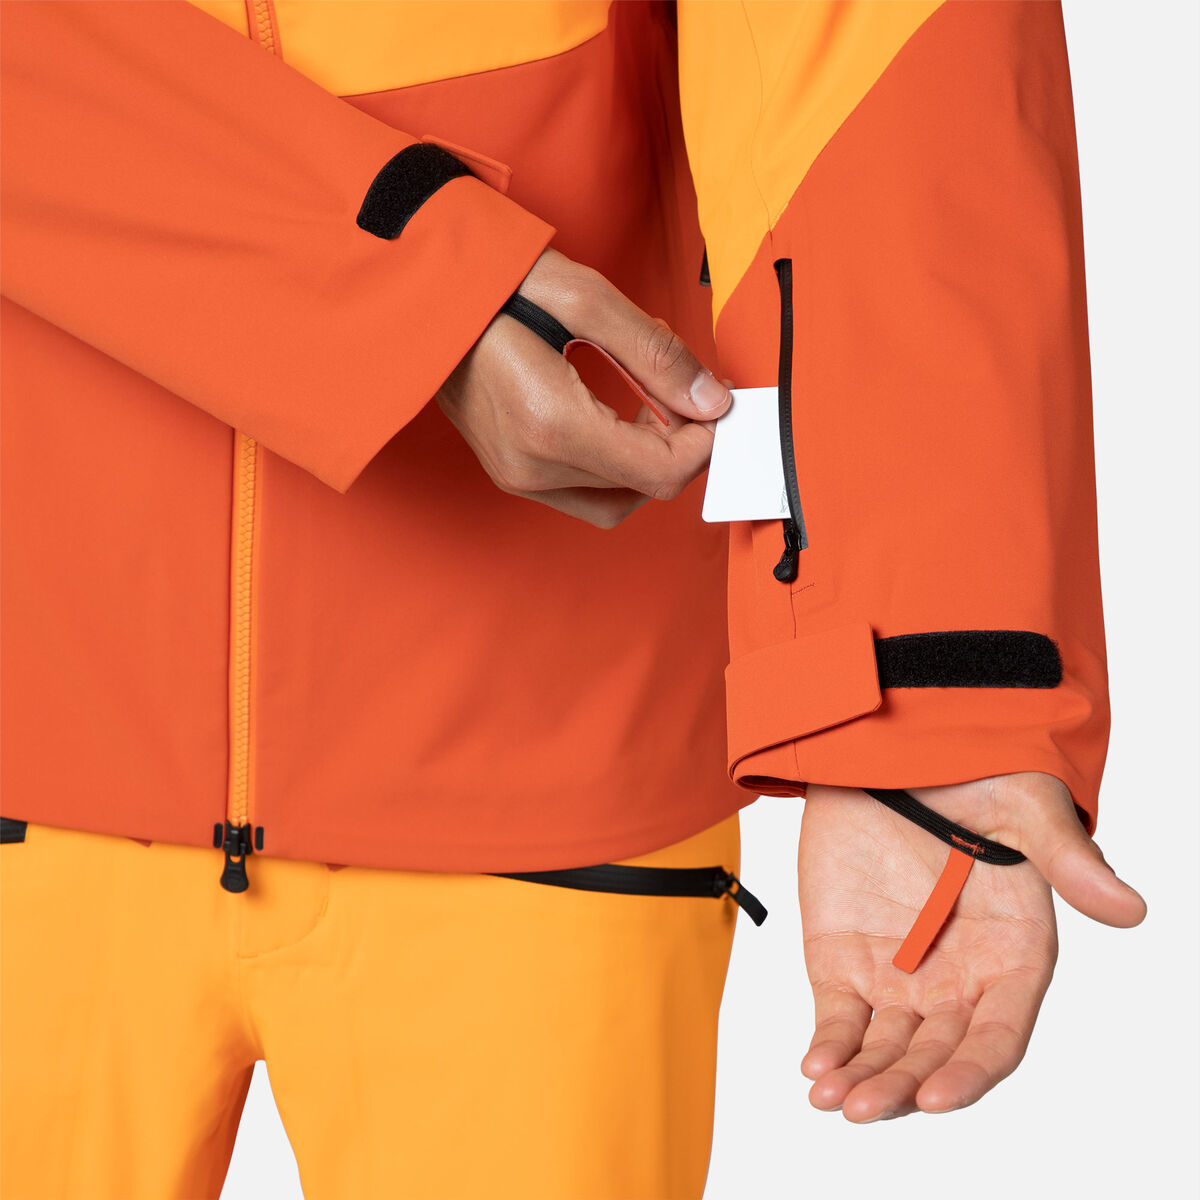 Rossignol Men's Evader Ski Jacket orange